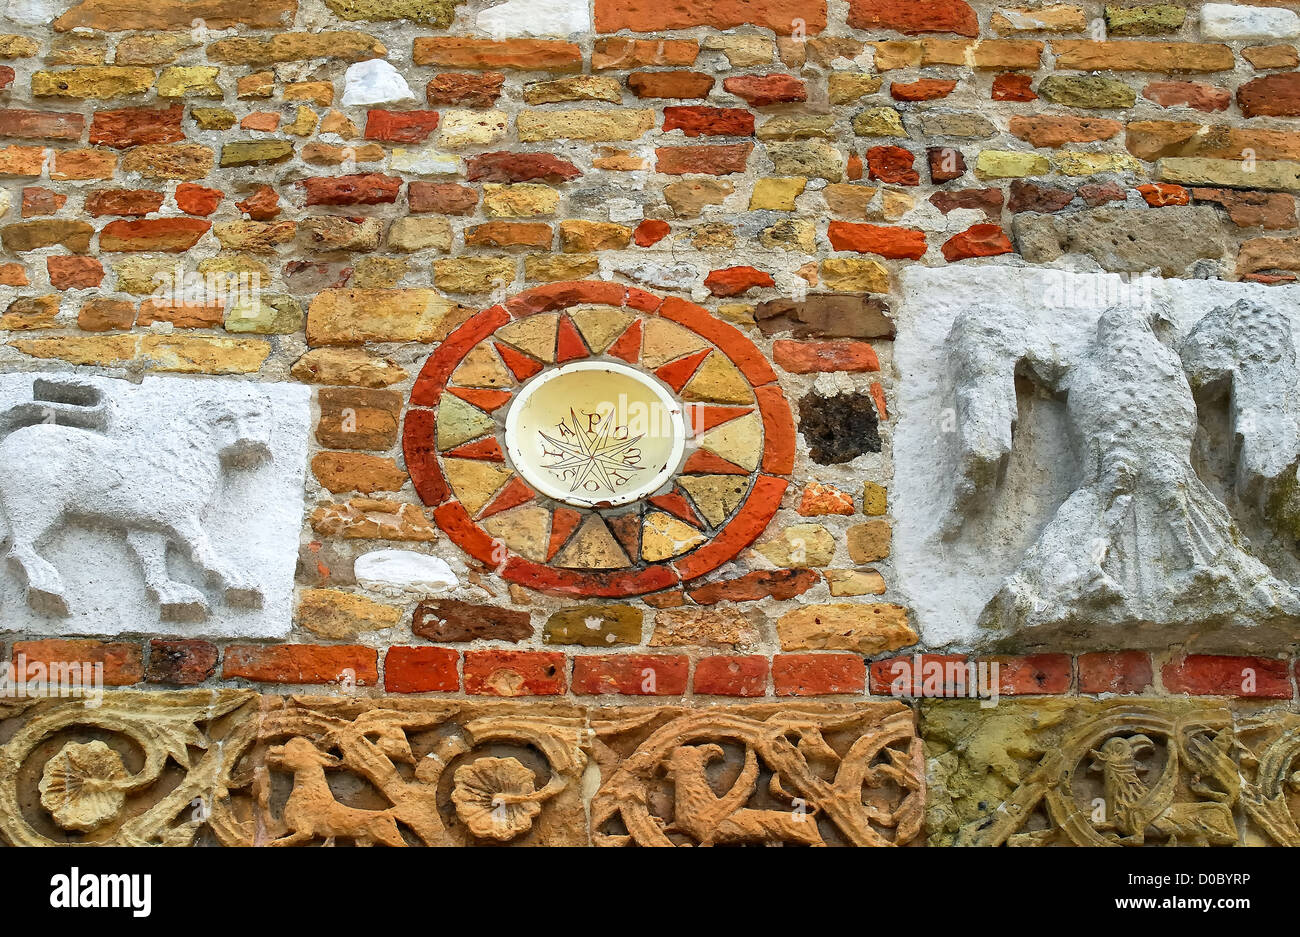 Abbazia di Pomposa situata nel comune di Codigoro in provincia di Ferrara è una abbazia risalente al IX secolo. Foto Stock